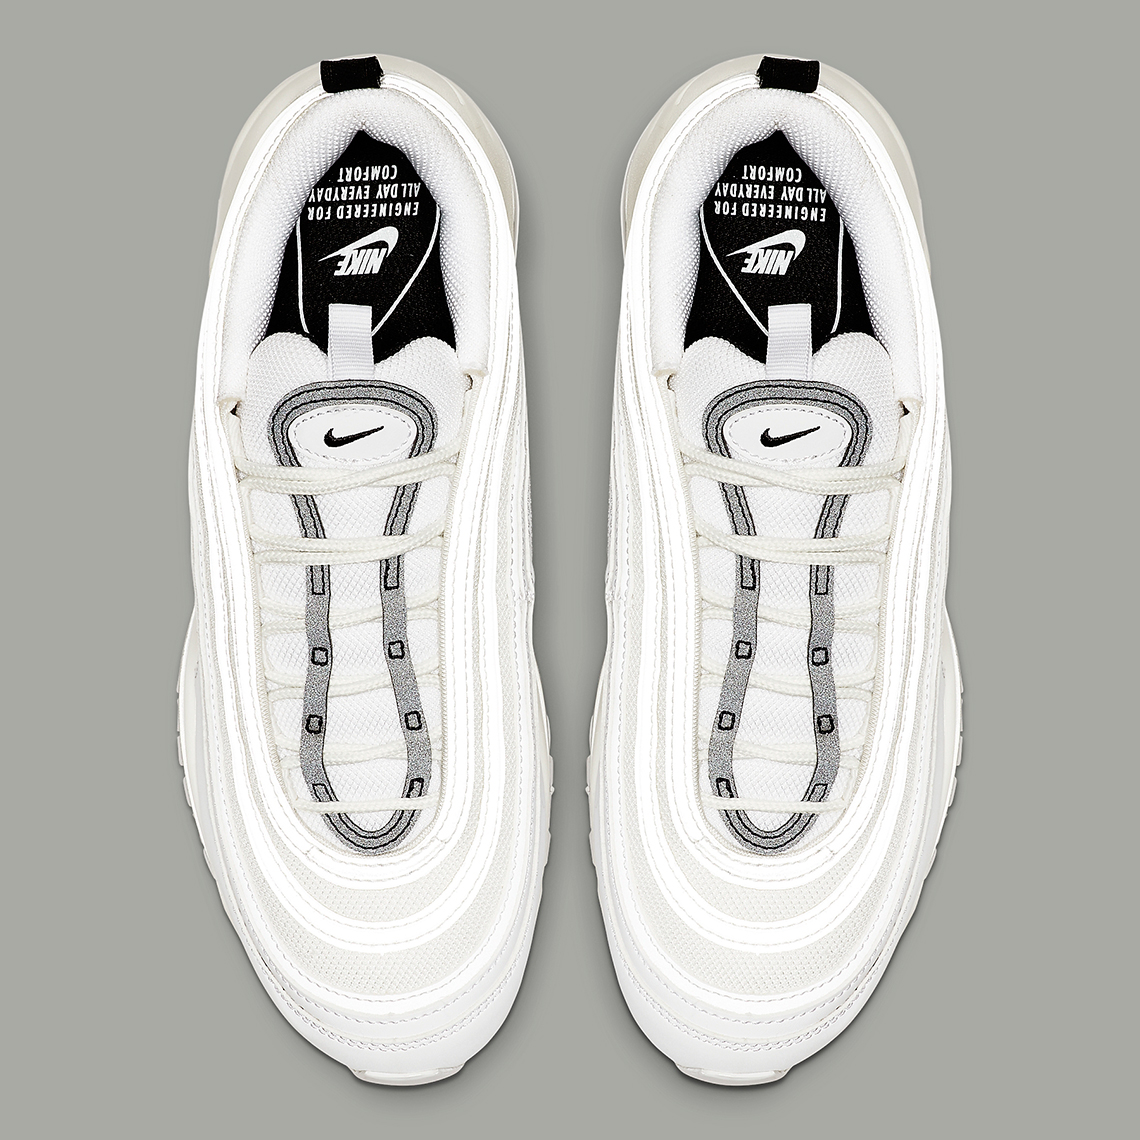 Nike Air Max 97 Womens White Silver Black 921733 103 5